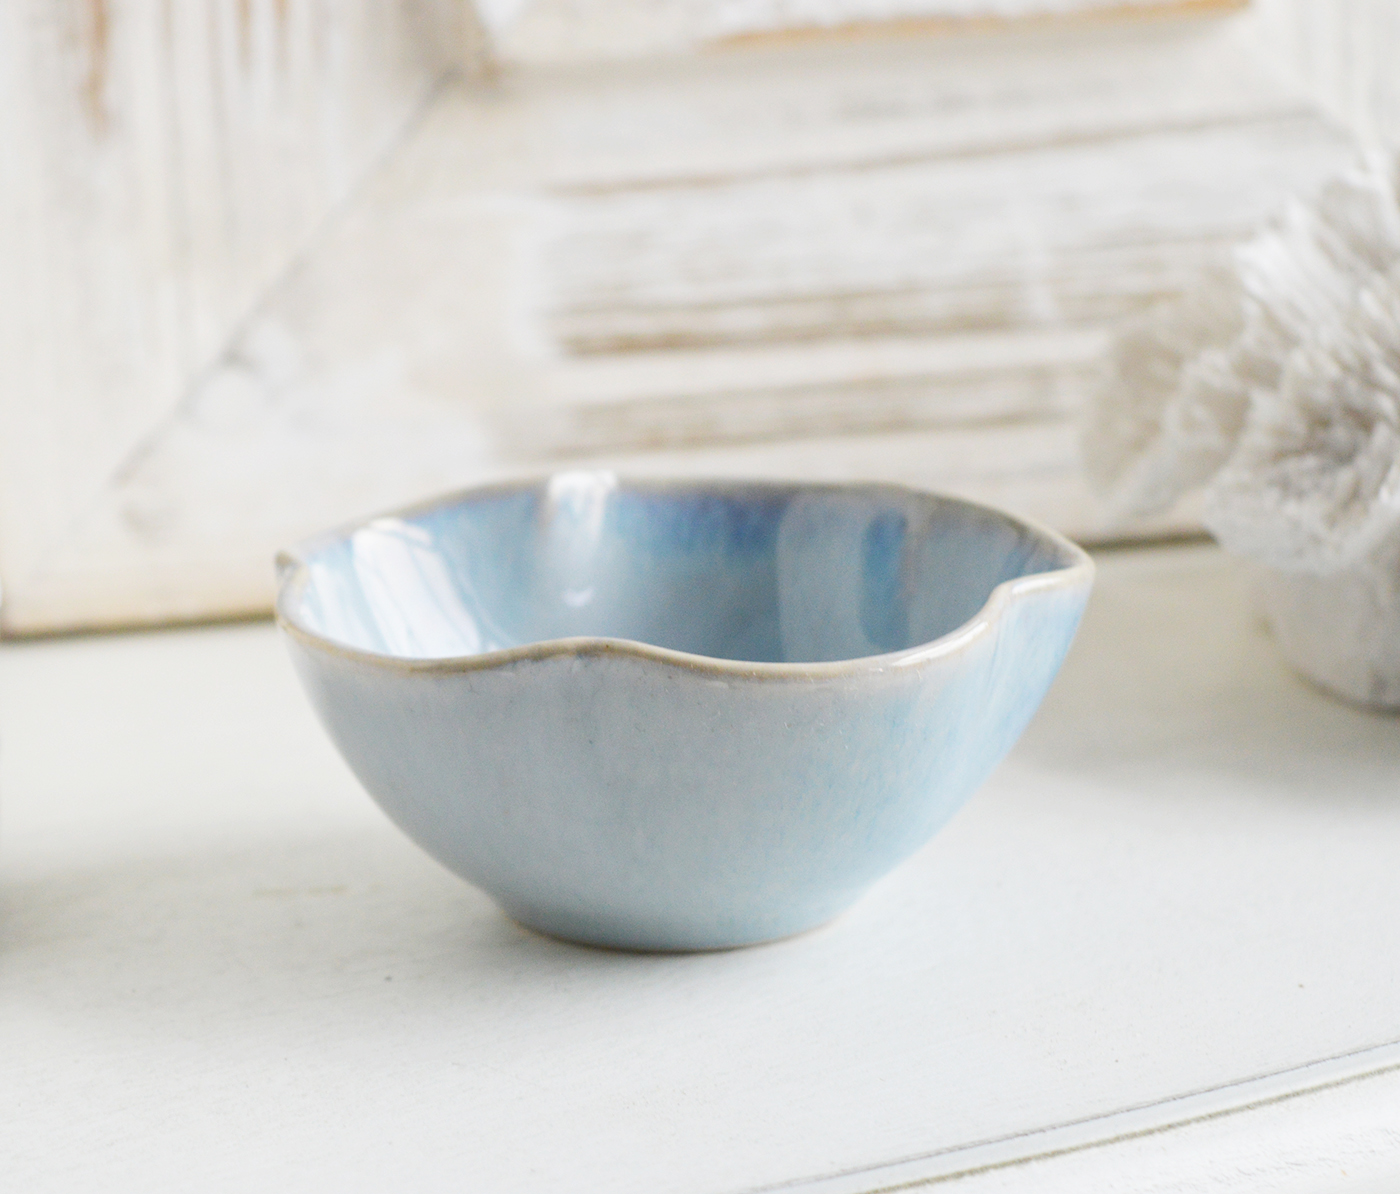 Pilgrim Ceramic Bowls - Blue Grey Textured for New England, Modern Farmhouse, Country and Coastal home interior decor